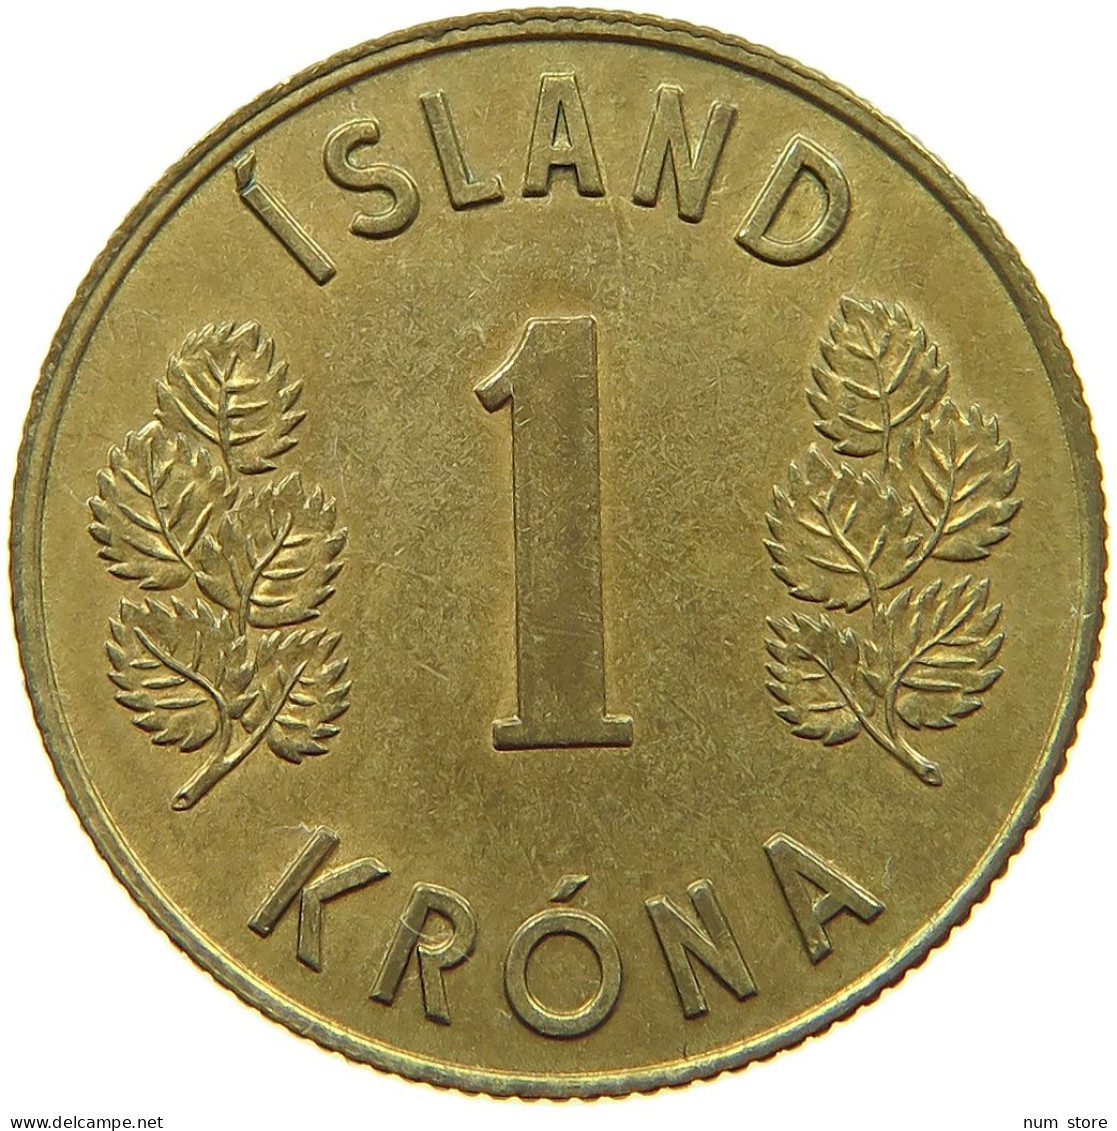 ICELAND KRONA 1975  #s066 0577 - Iceland